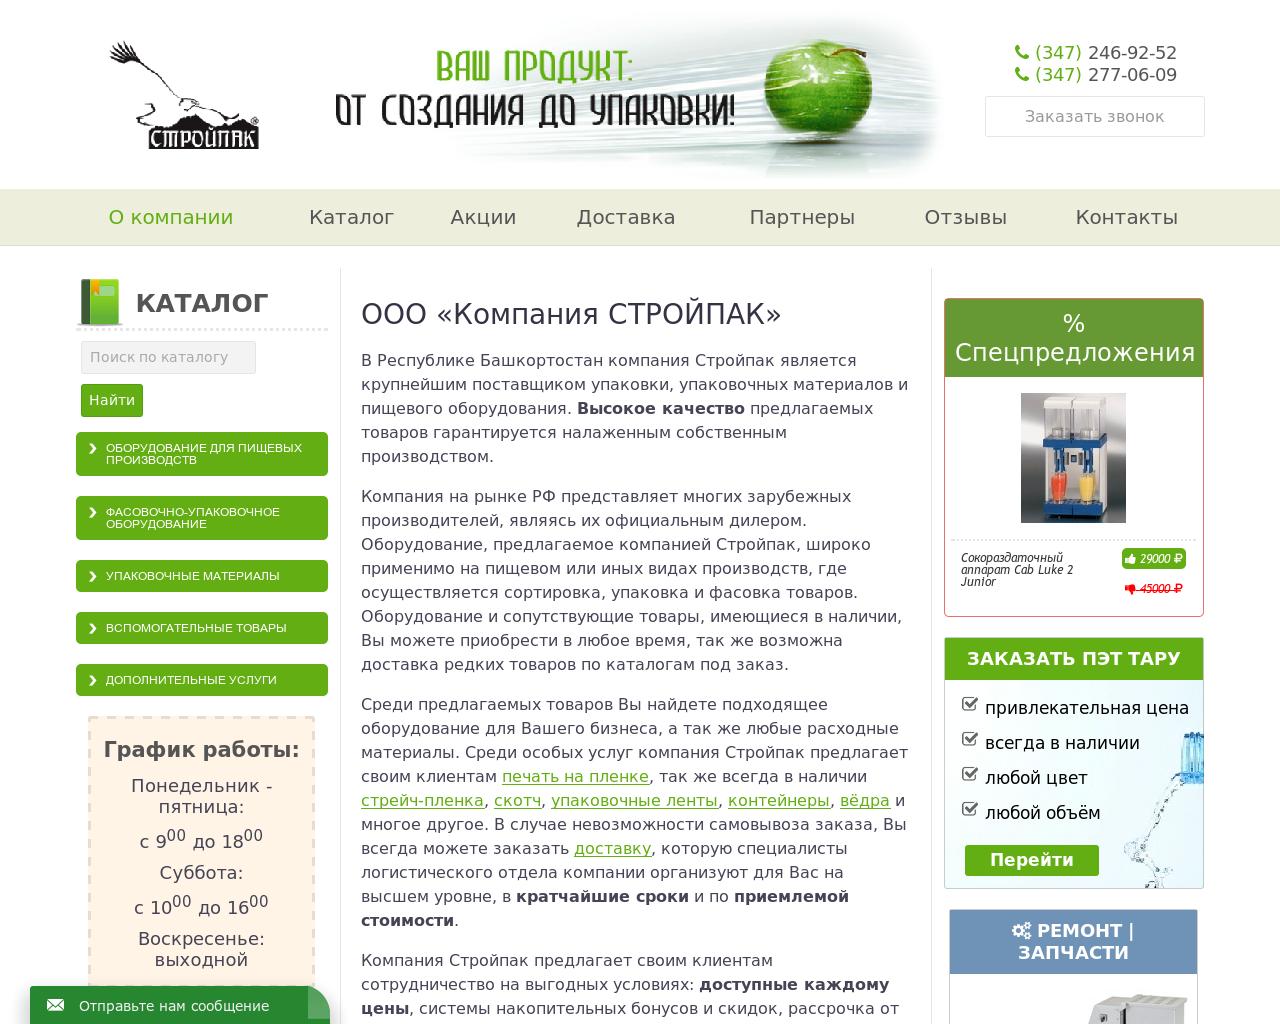 Изображение сайта stroipak.ru в разрешении 1280x1024